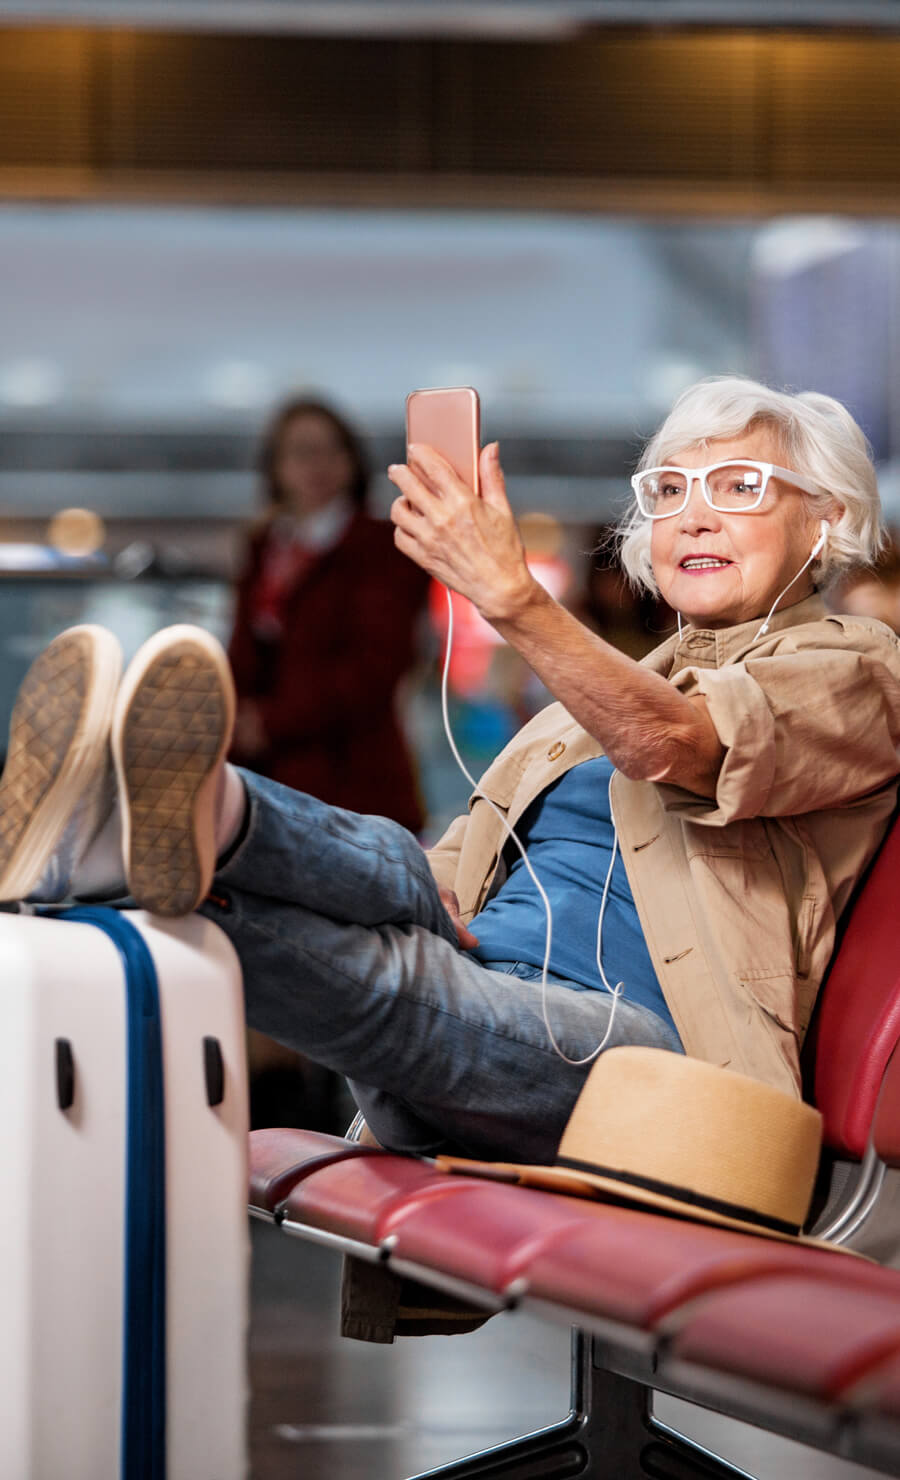 iPhone設定方法 「海外到着後のiPhoneへの設定方法」-説明画像6 白髪の女性が設定完了したiPhoneを嬉しそうに眺める